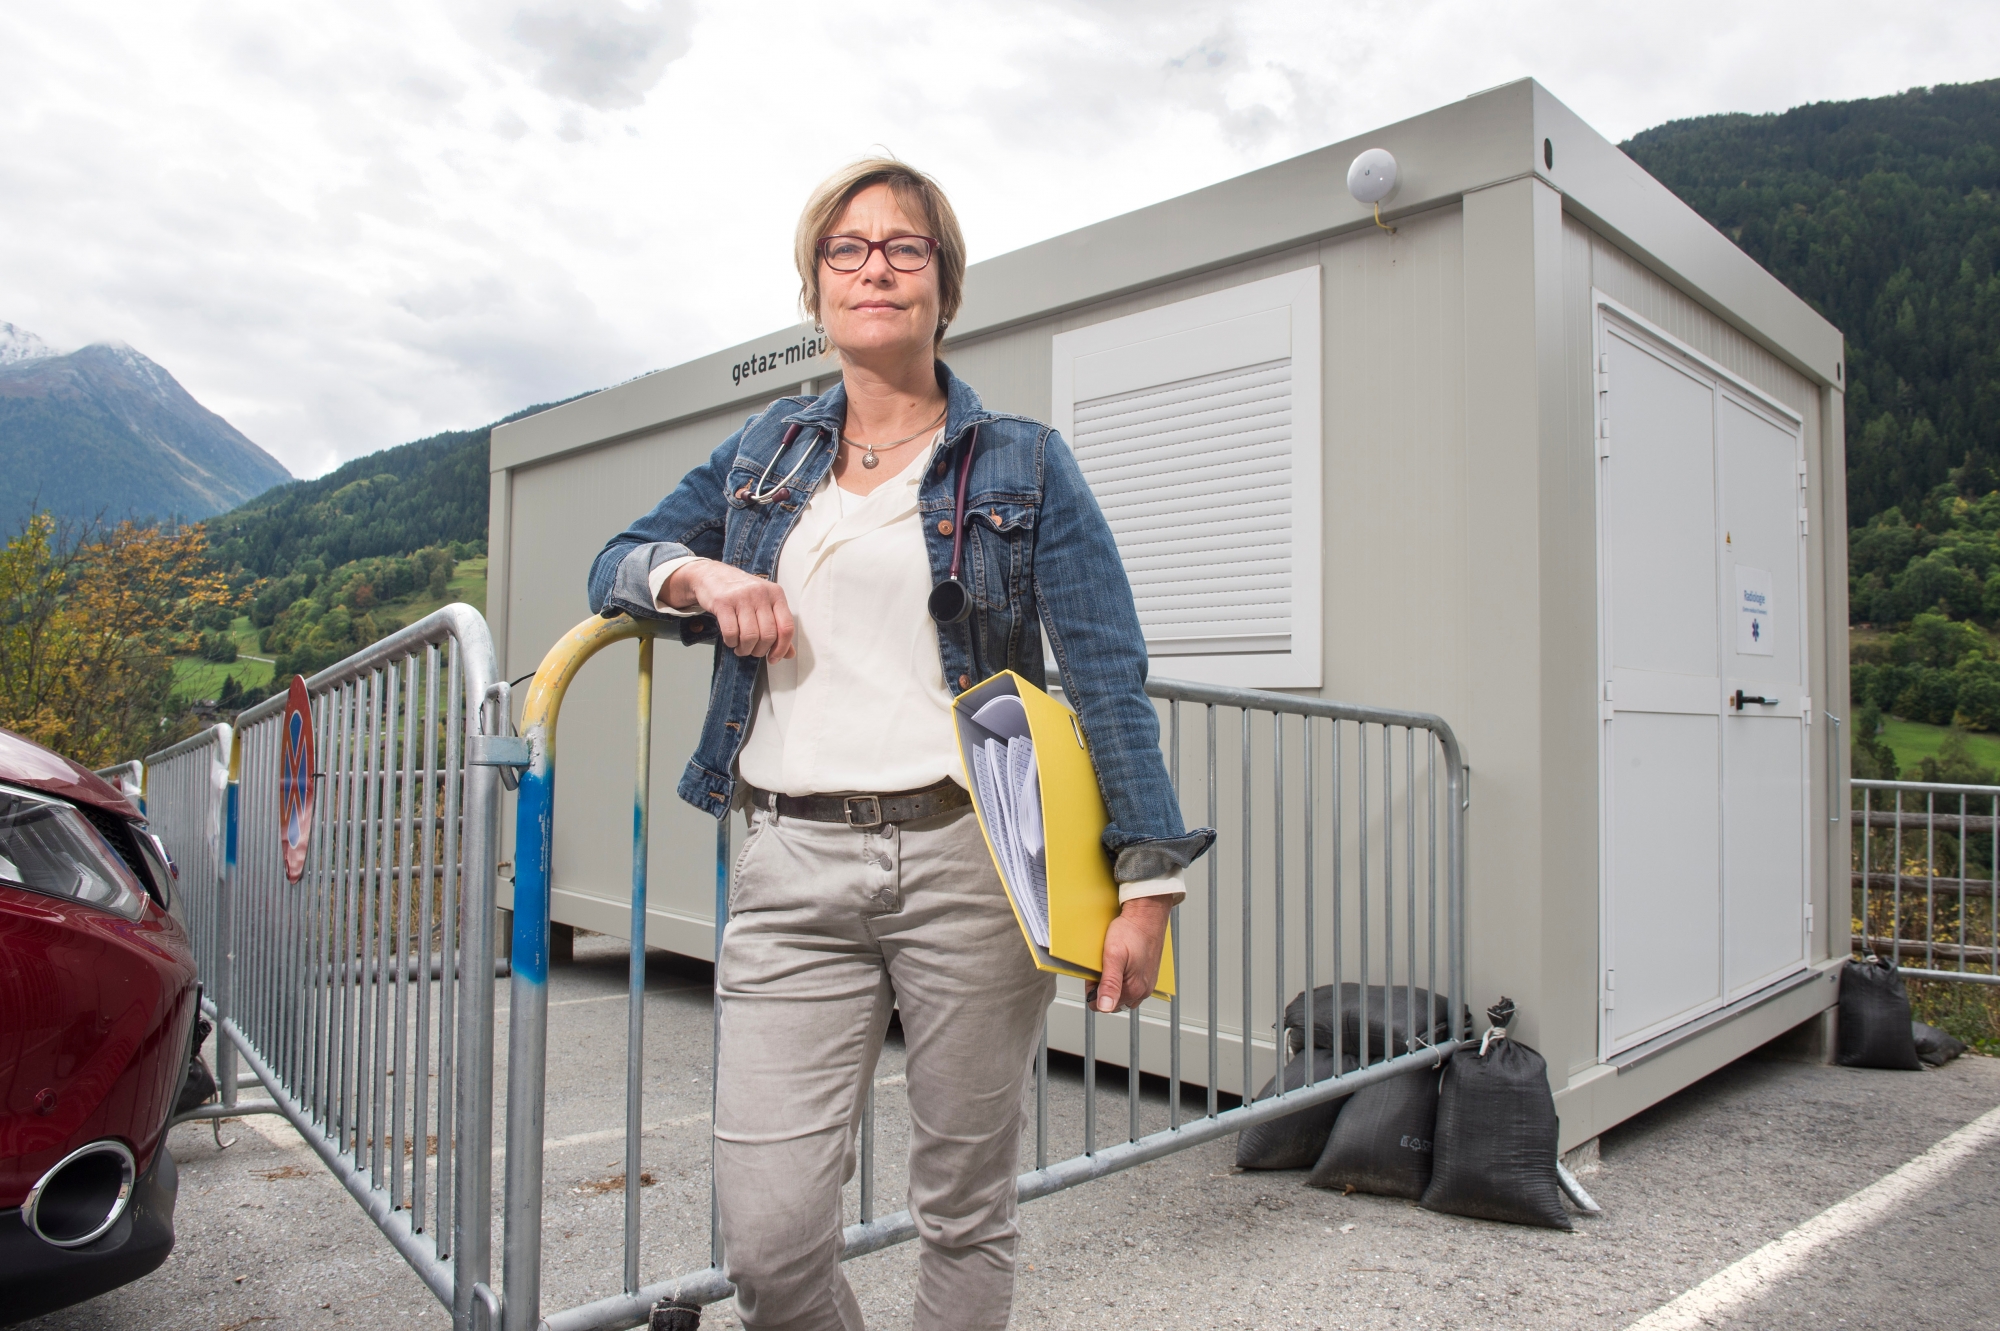 Vissoie - 26 septembre 2017  - Franzisca Andenmatten Zufferey,médecin-généraliste,pose devant le cabanon de radiologie,installé provisoirement pendant le temps de la construction du nouveau Centre médical d'Anniviers. RADIOLOGIE2